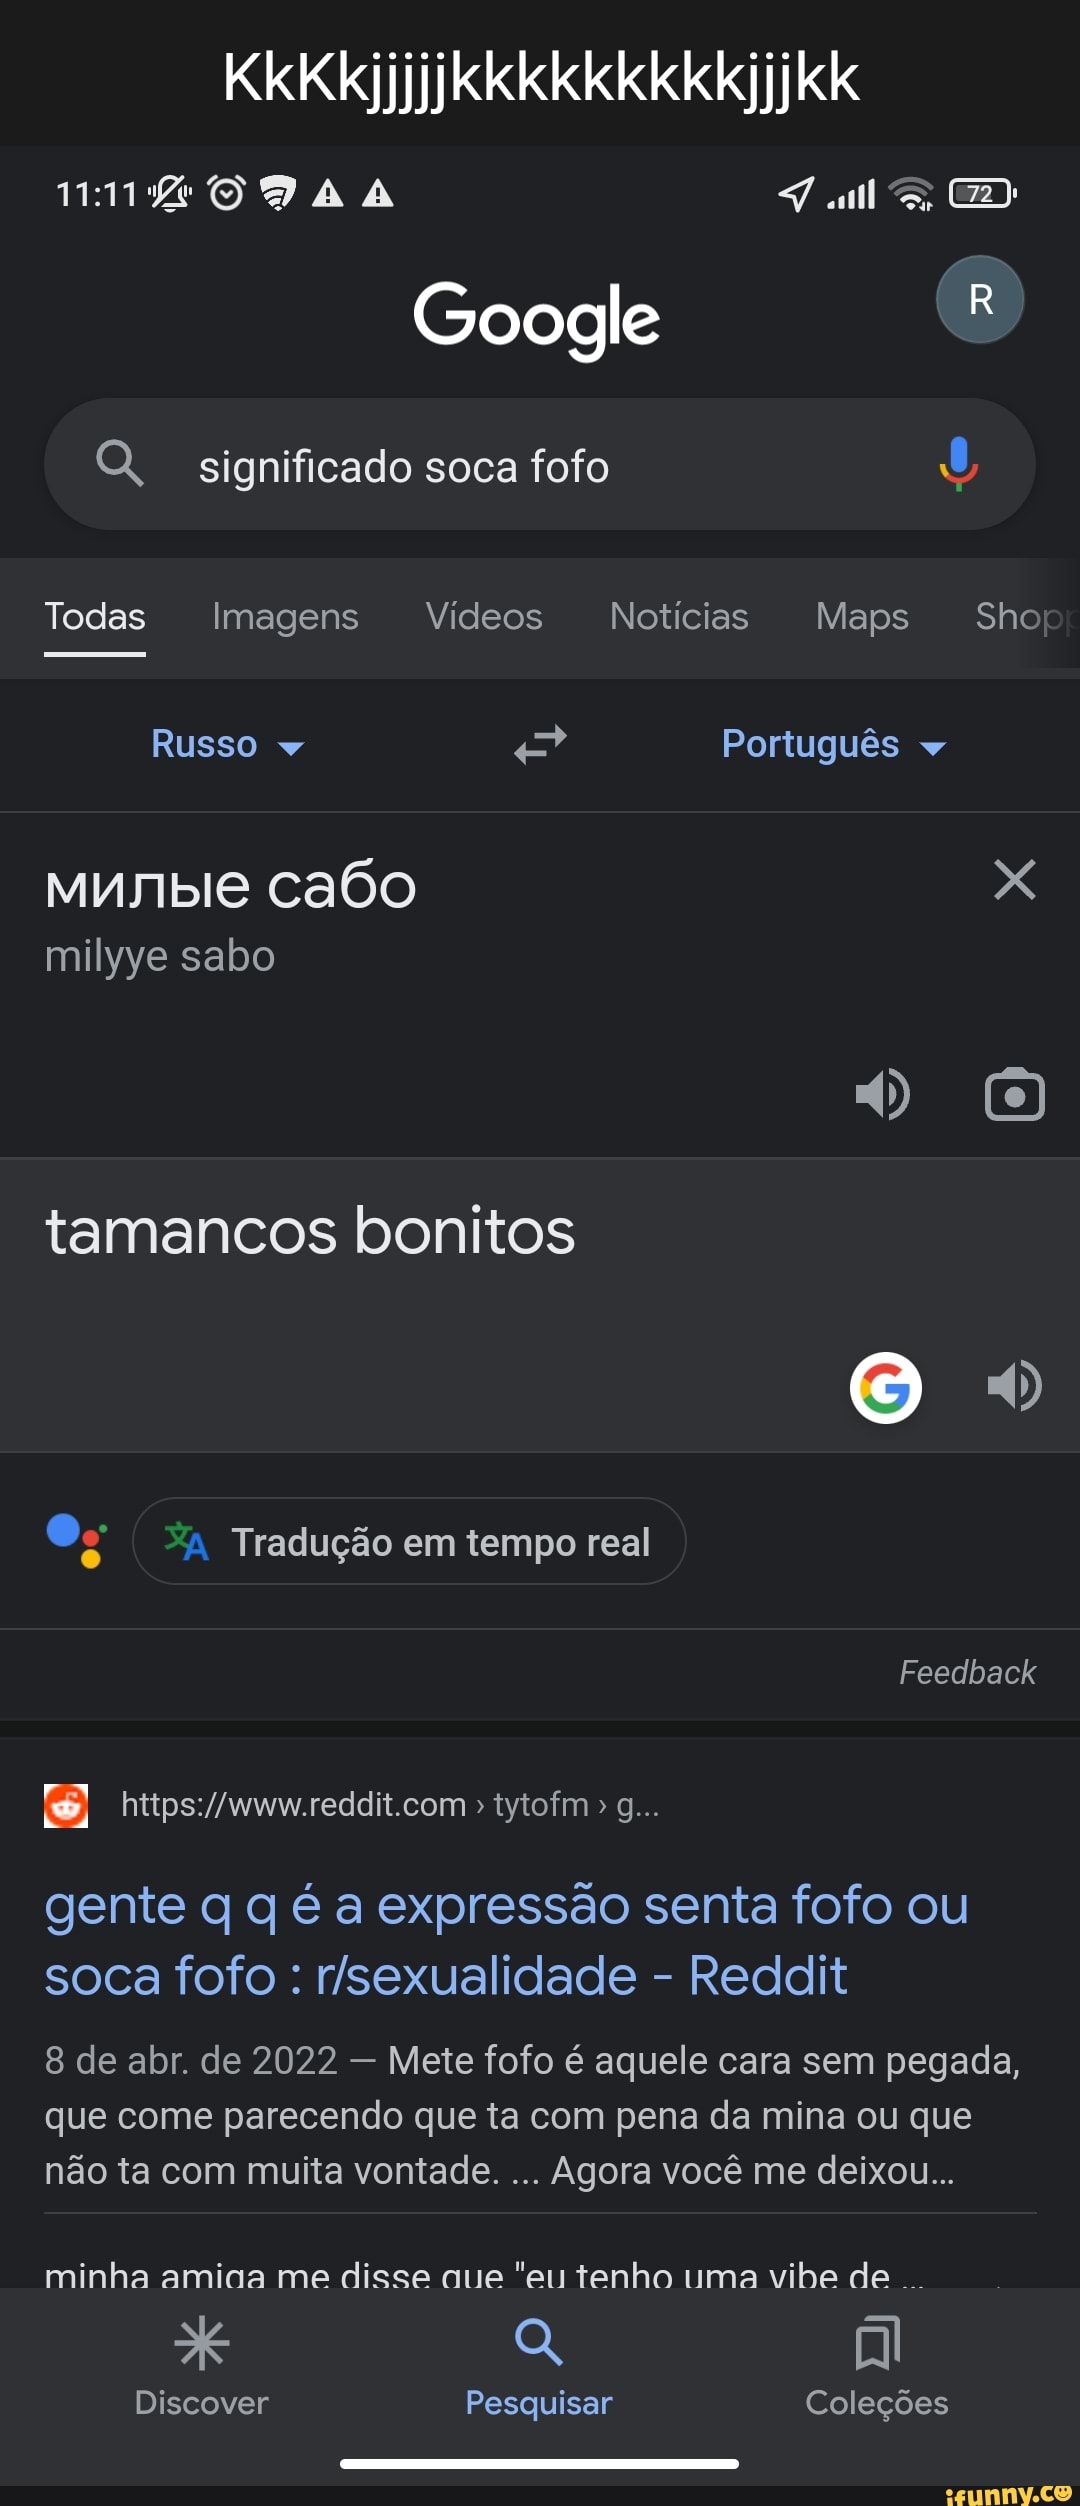 Google Q, significado soca fofo Todas Imagens Vídeos Notícias Maps Shop  Russo E Português MuNbIe Cado